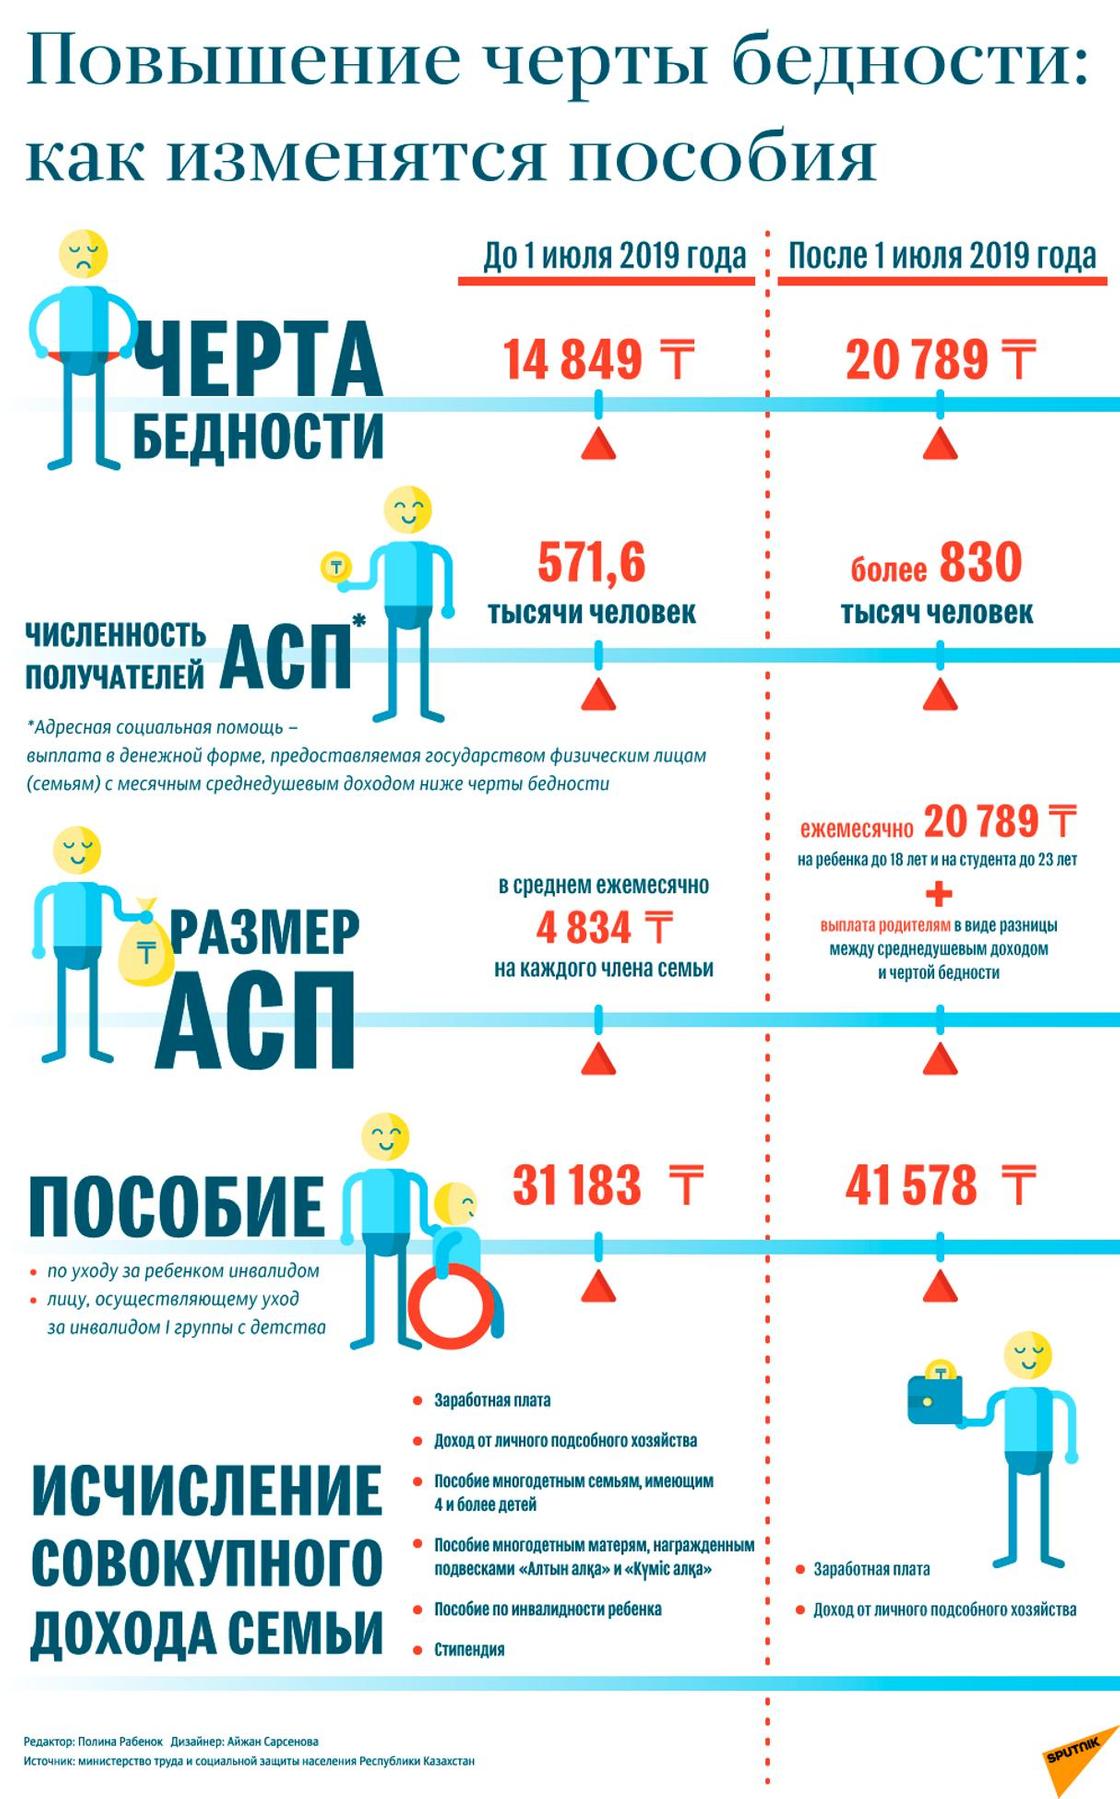 Повышение черты бедности и пособий: какие изменения ждут казахстанцев с 1 июля